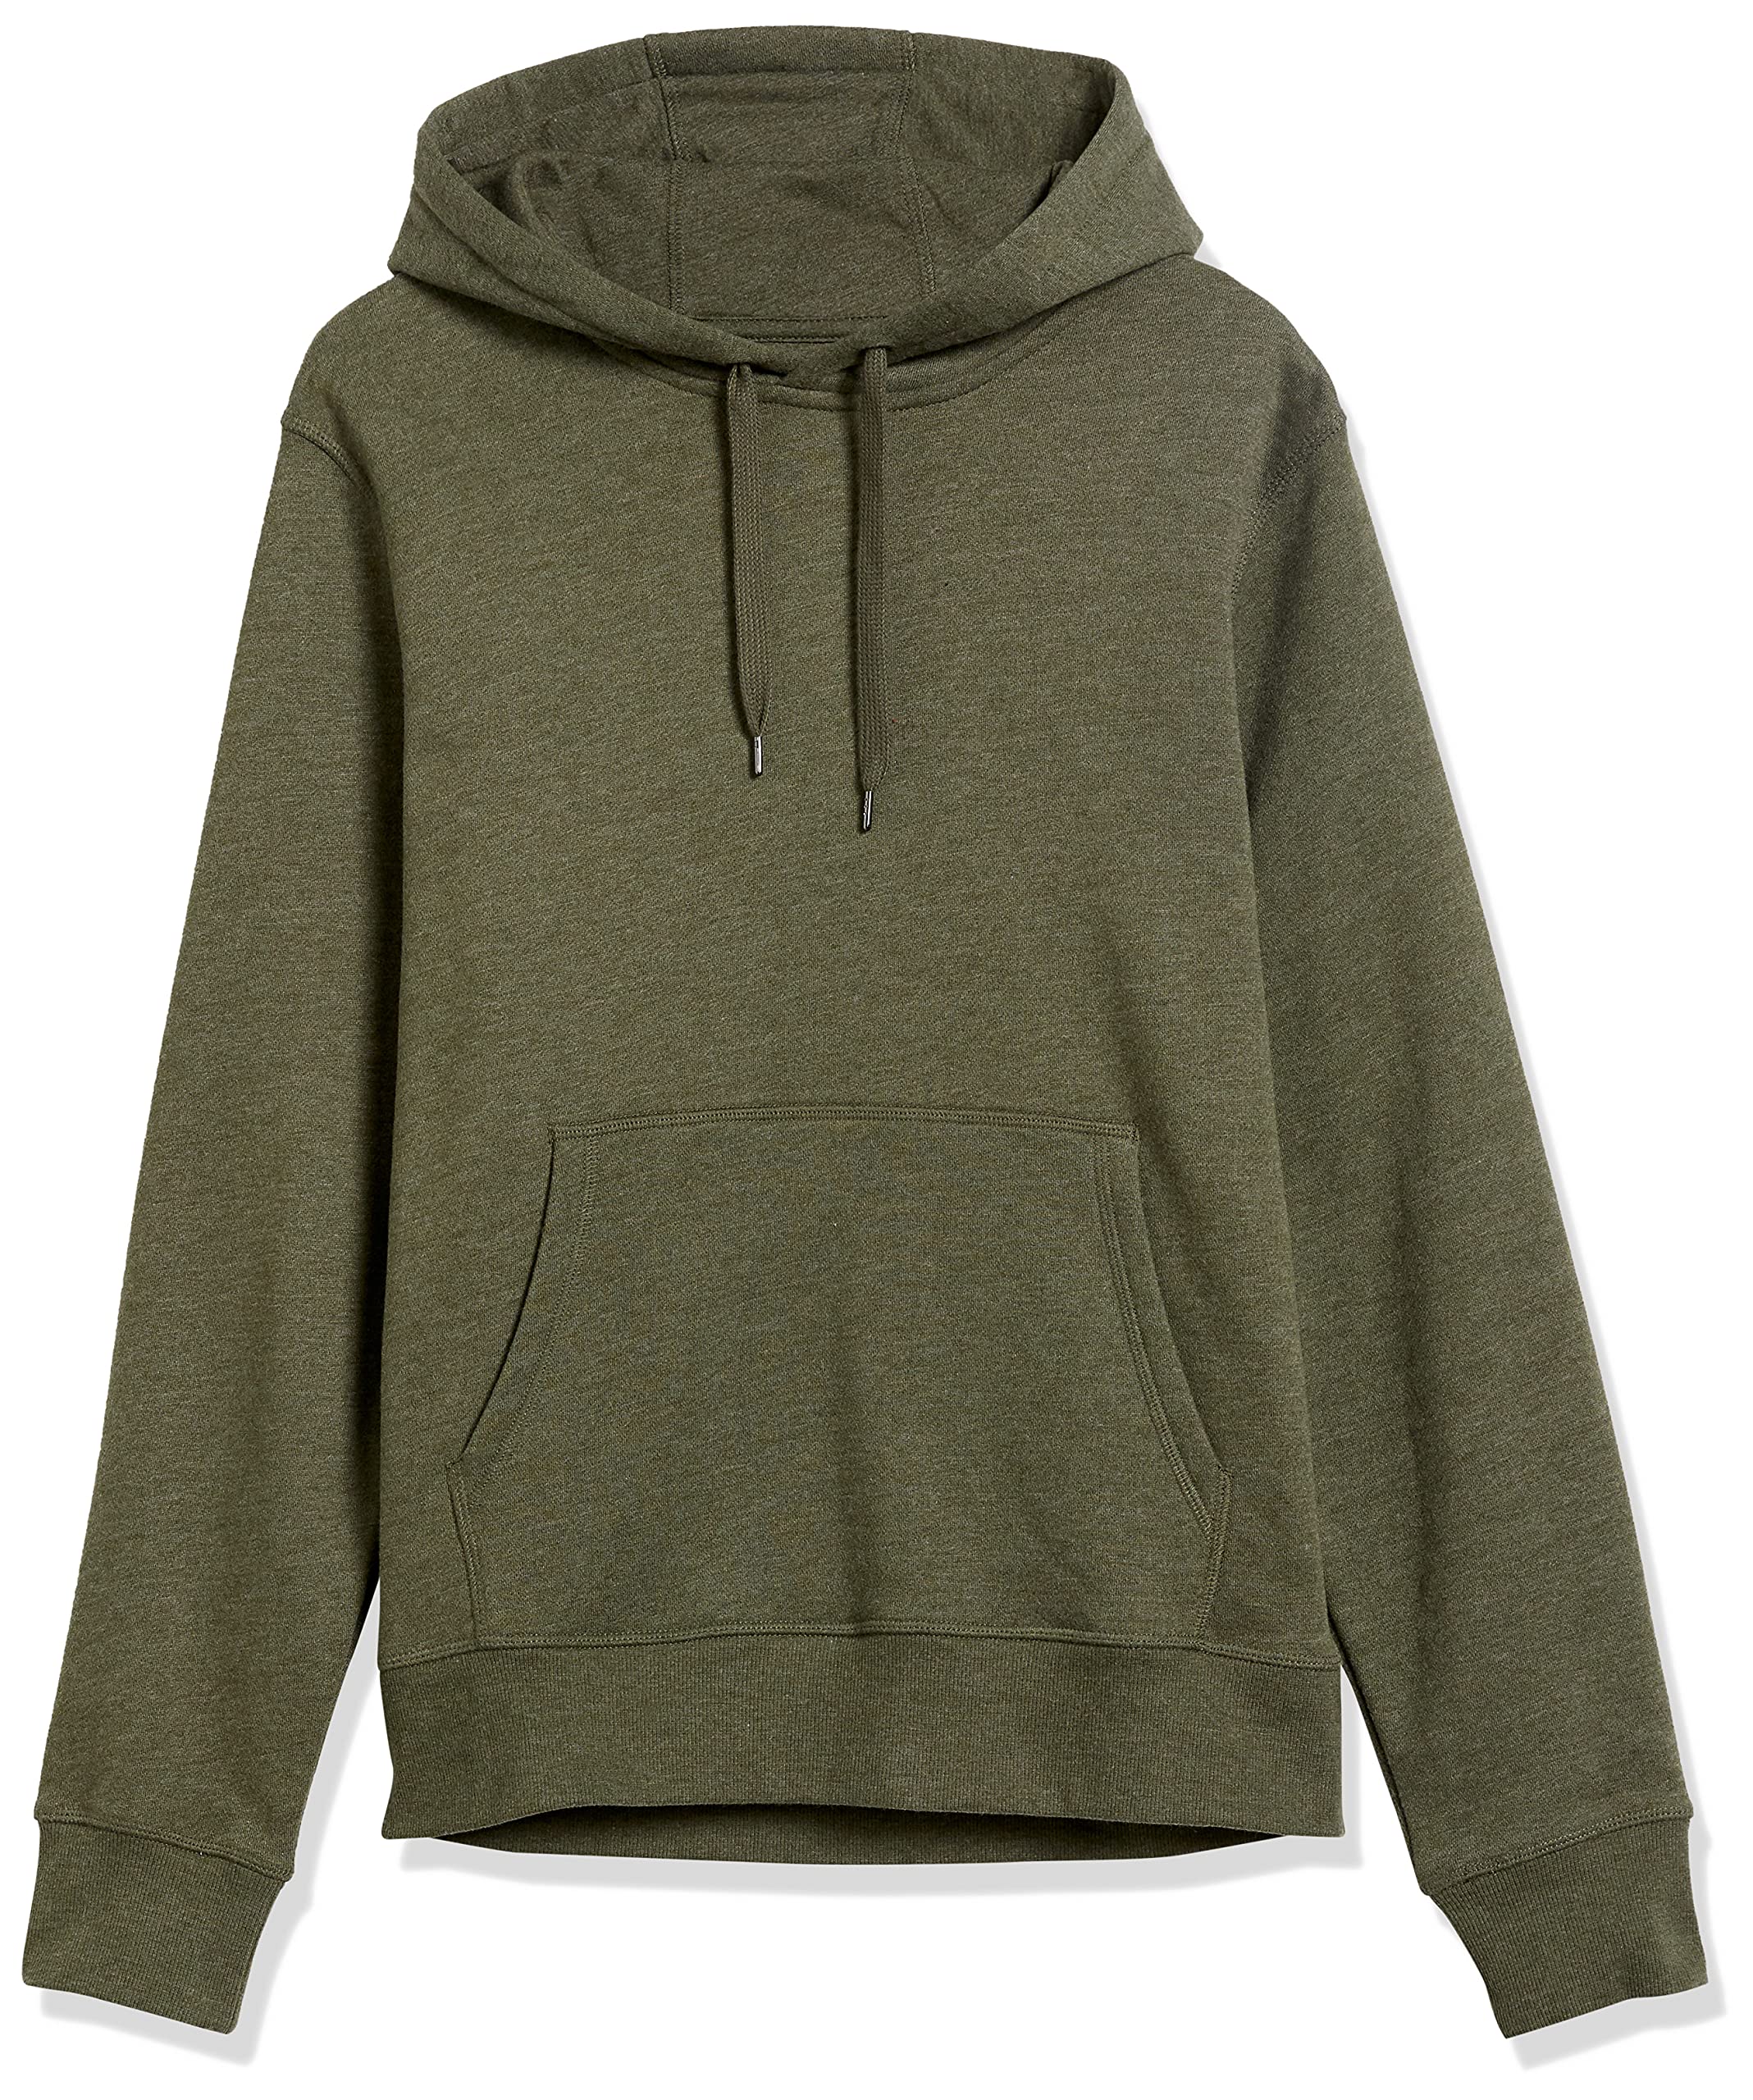 Amazon Essentials Men's Hooded Fleece Sweatshirt (Available in Big & Tall)